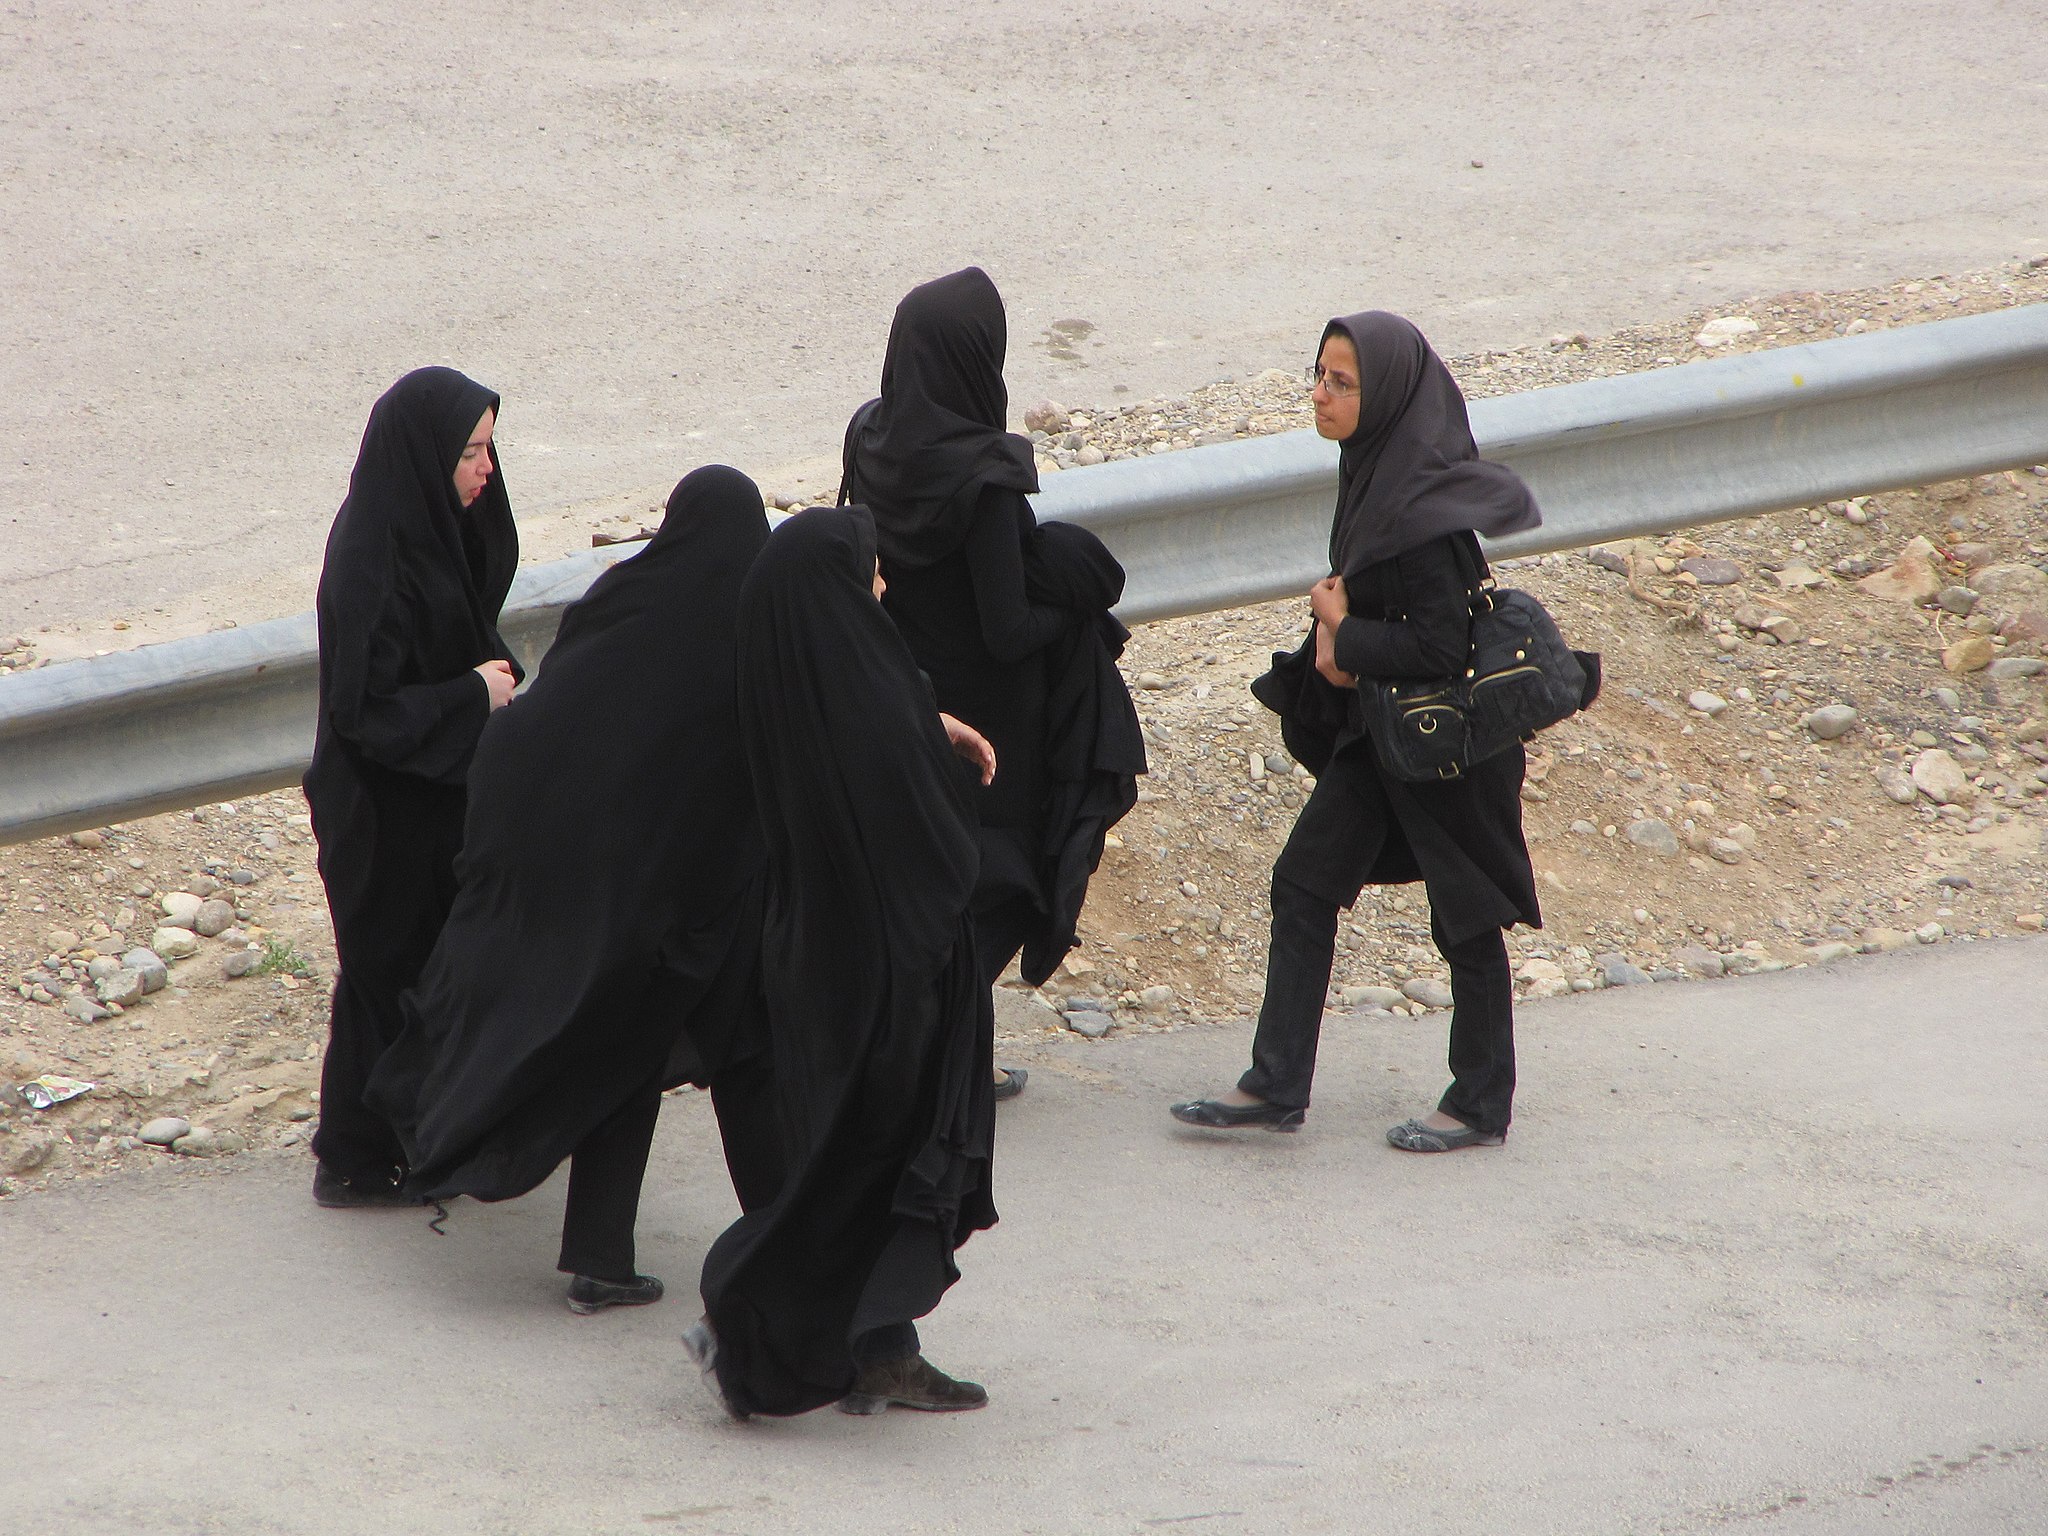 Un grupo de mujeres iraníes caminan con su hiyab en la ciudad de Qom, 2009. Foto: Mostafameraji, /CC0 - Wikimedia Commons.